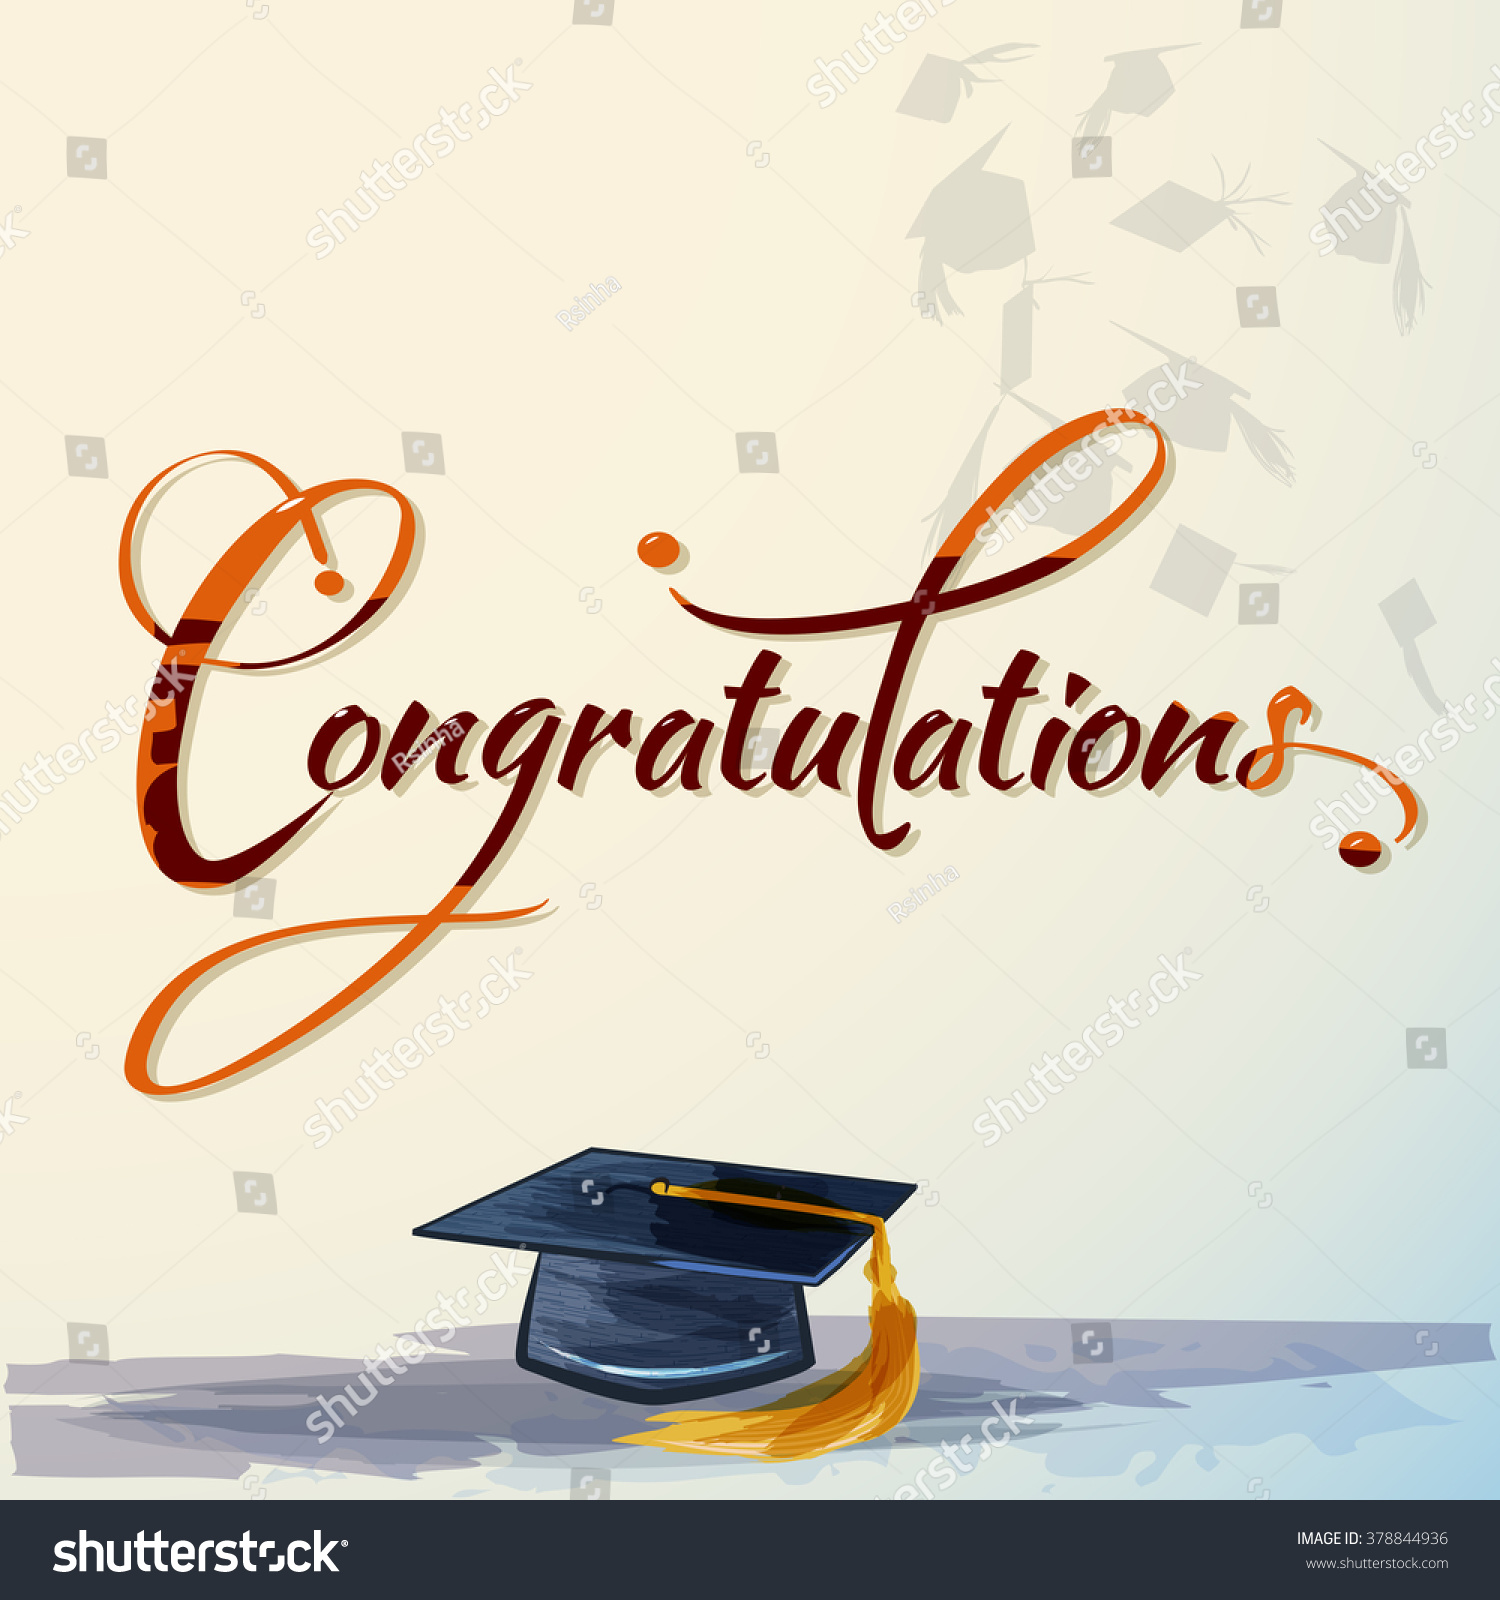 Congratulations Calligraphy Watercolors Graduation Cap Stock Vector ...